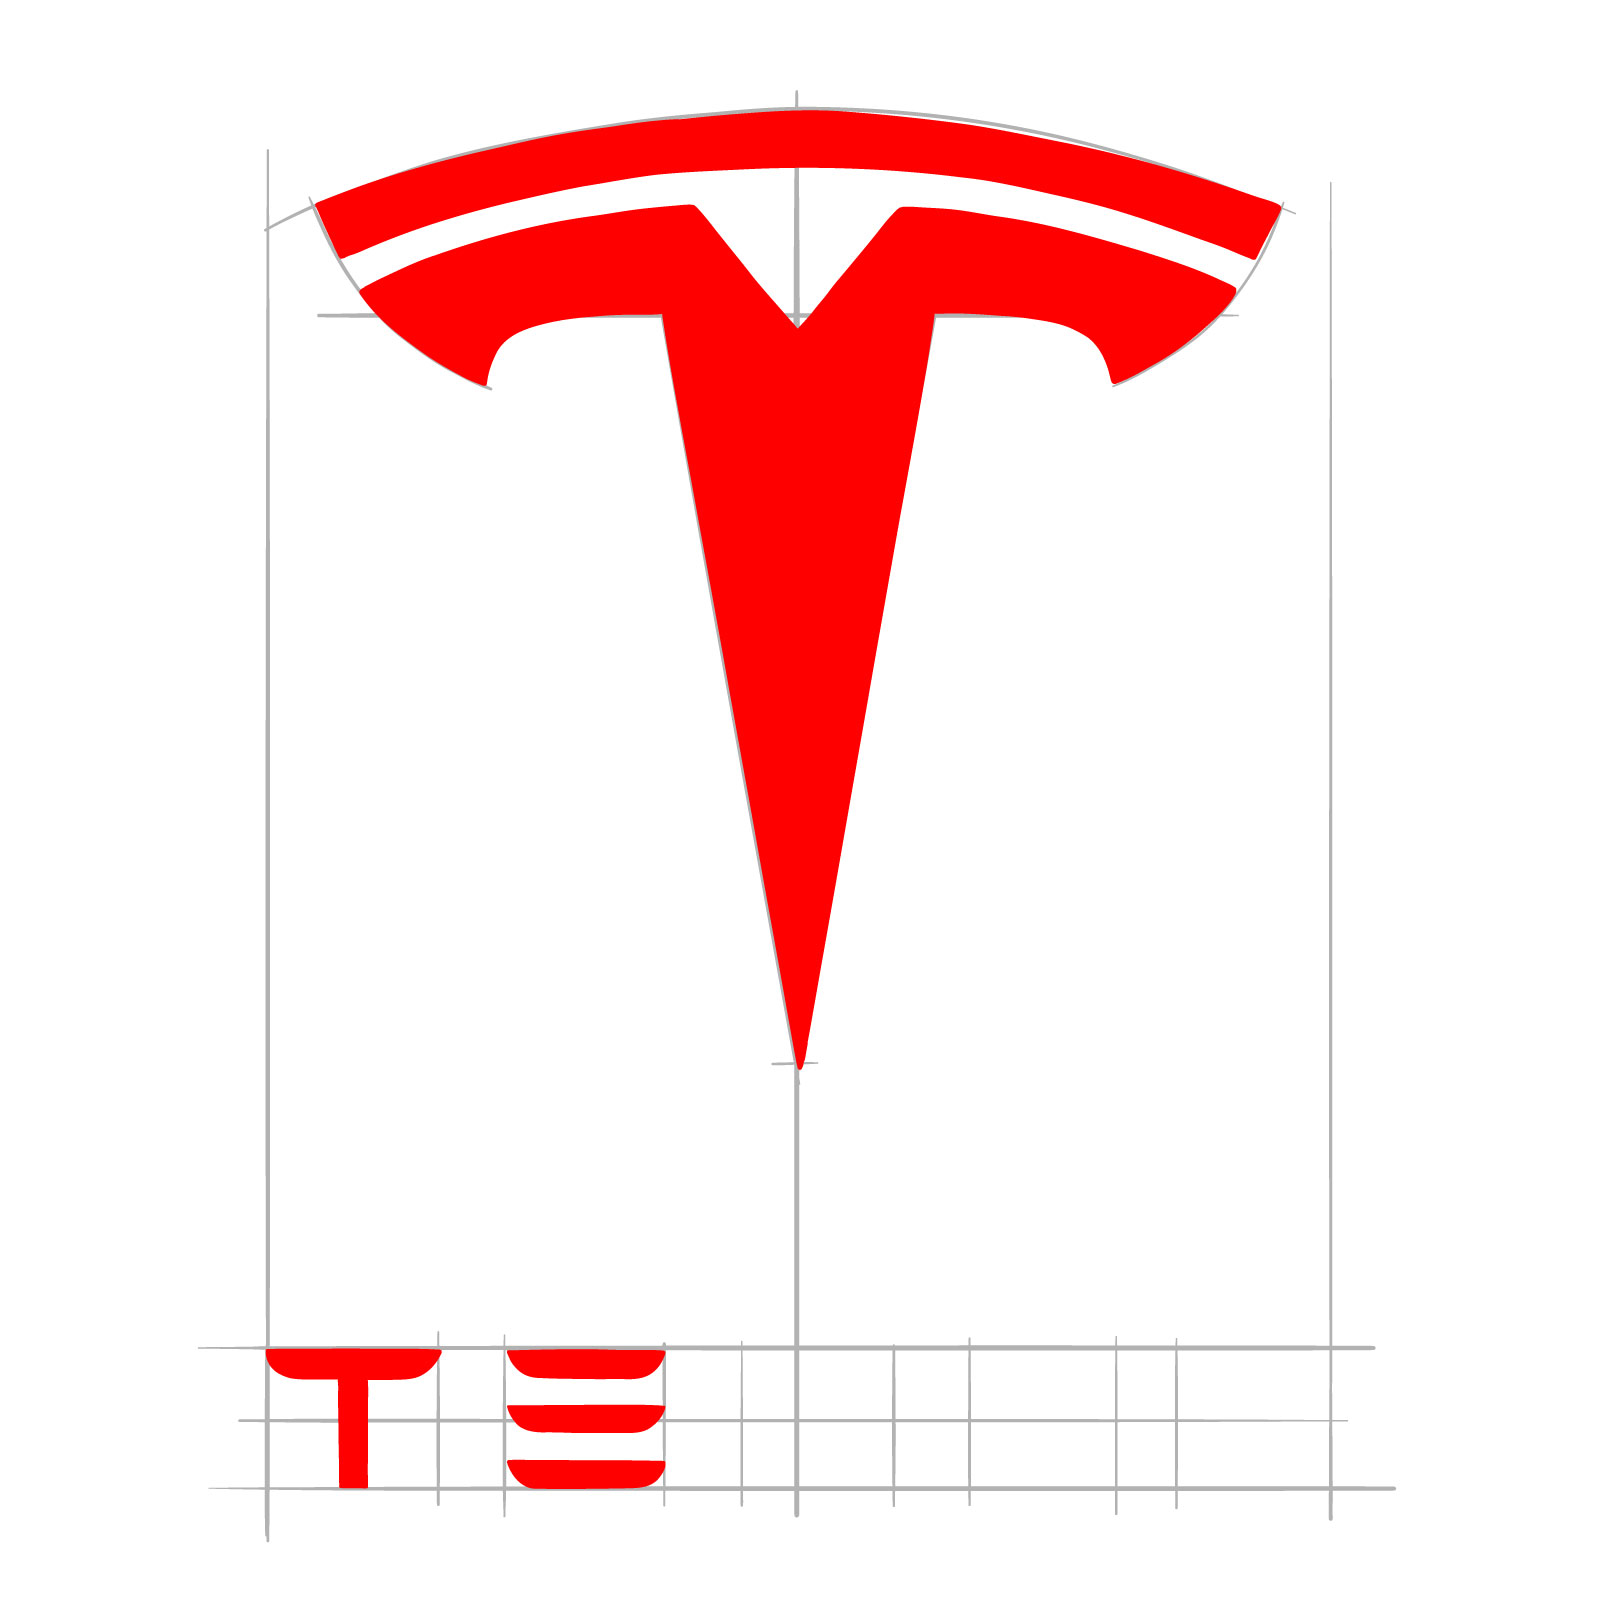 How to draw the Tesla logo - step 10